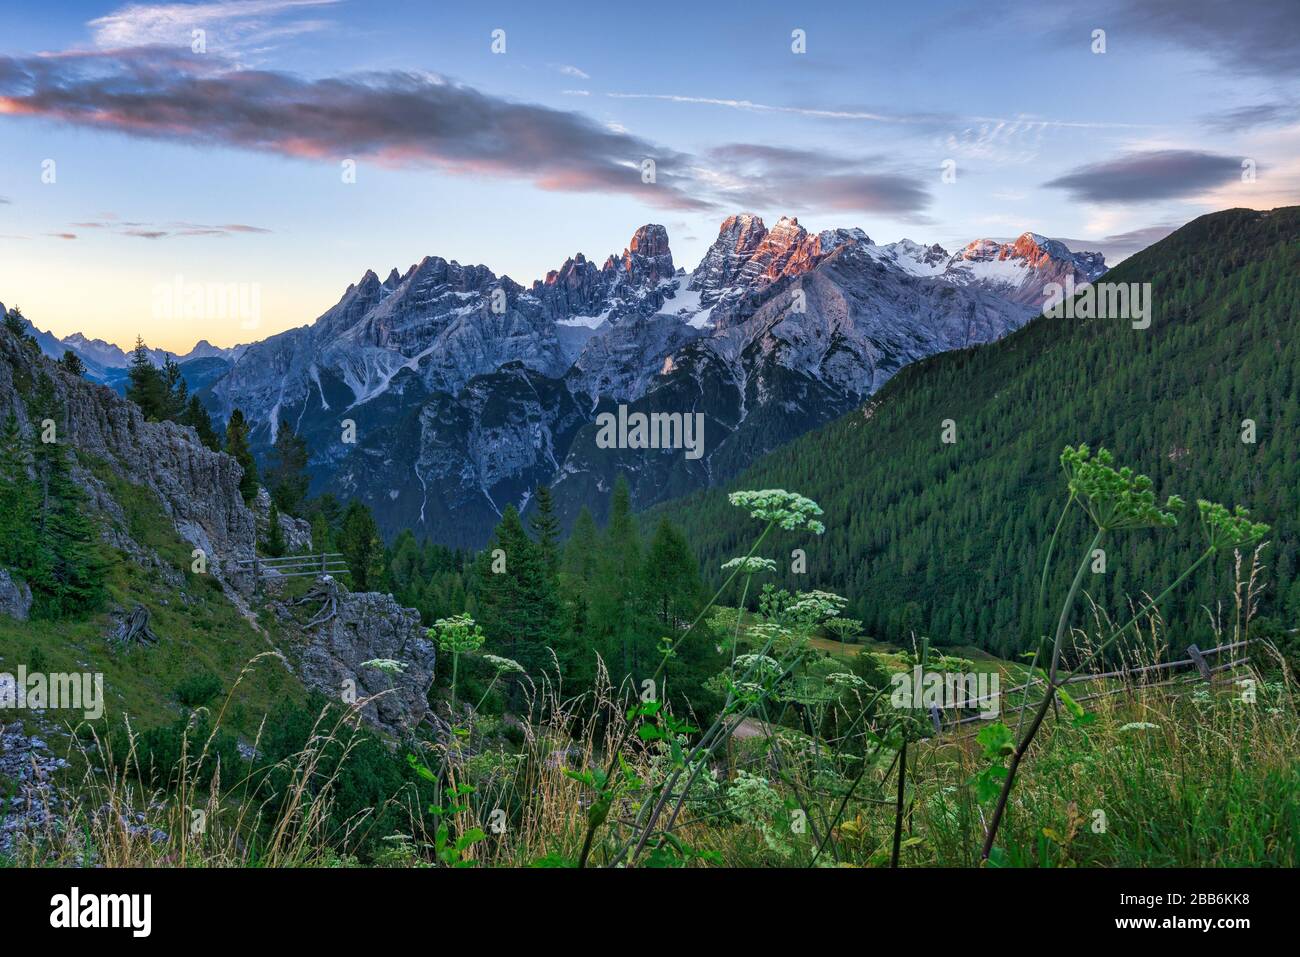 Gruppo Monte Cristallo, Cortina d'Ampezzo, Belluno, Veneto, Italia Foto Stock